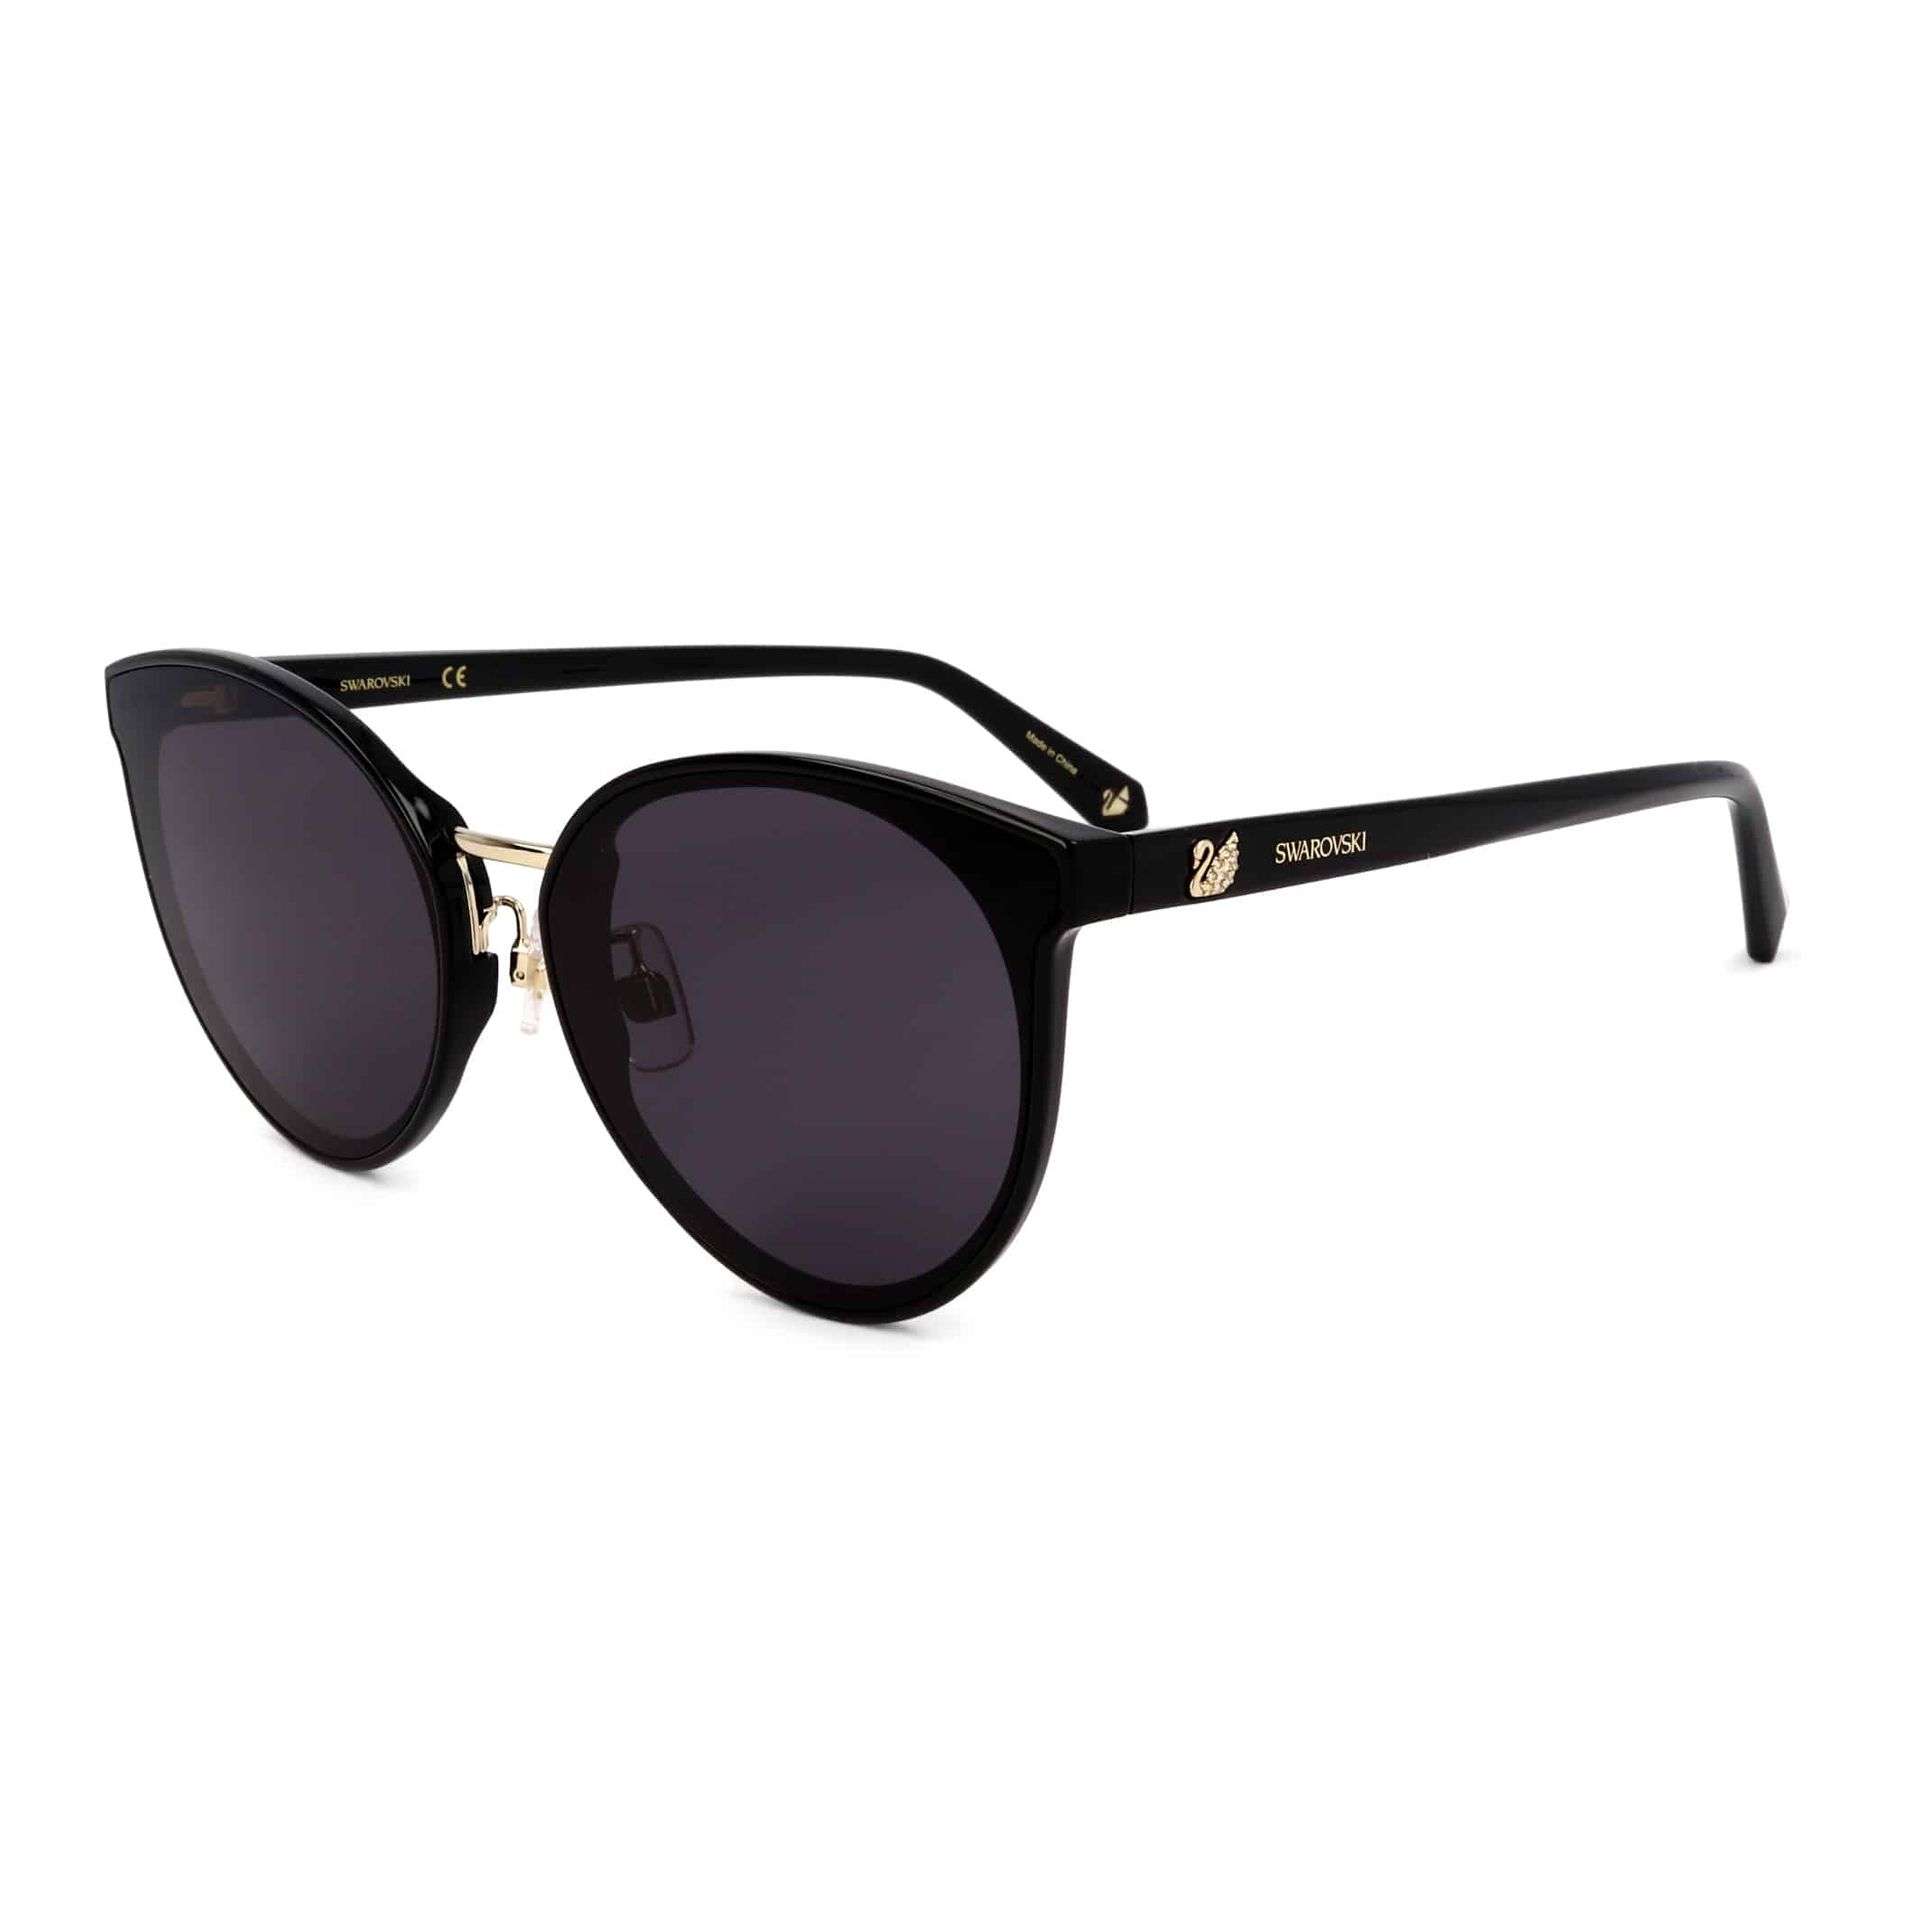 Swarovski Sonnenbrille schwarz